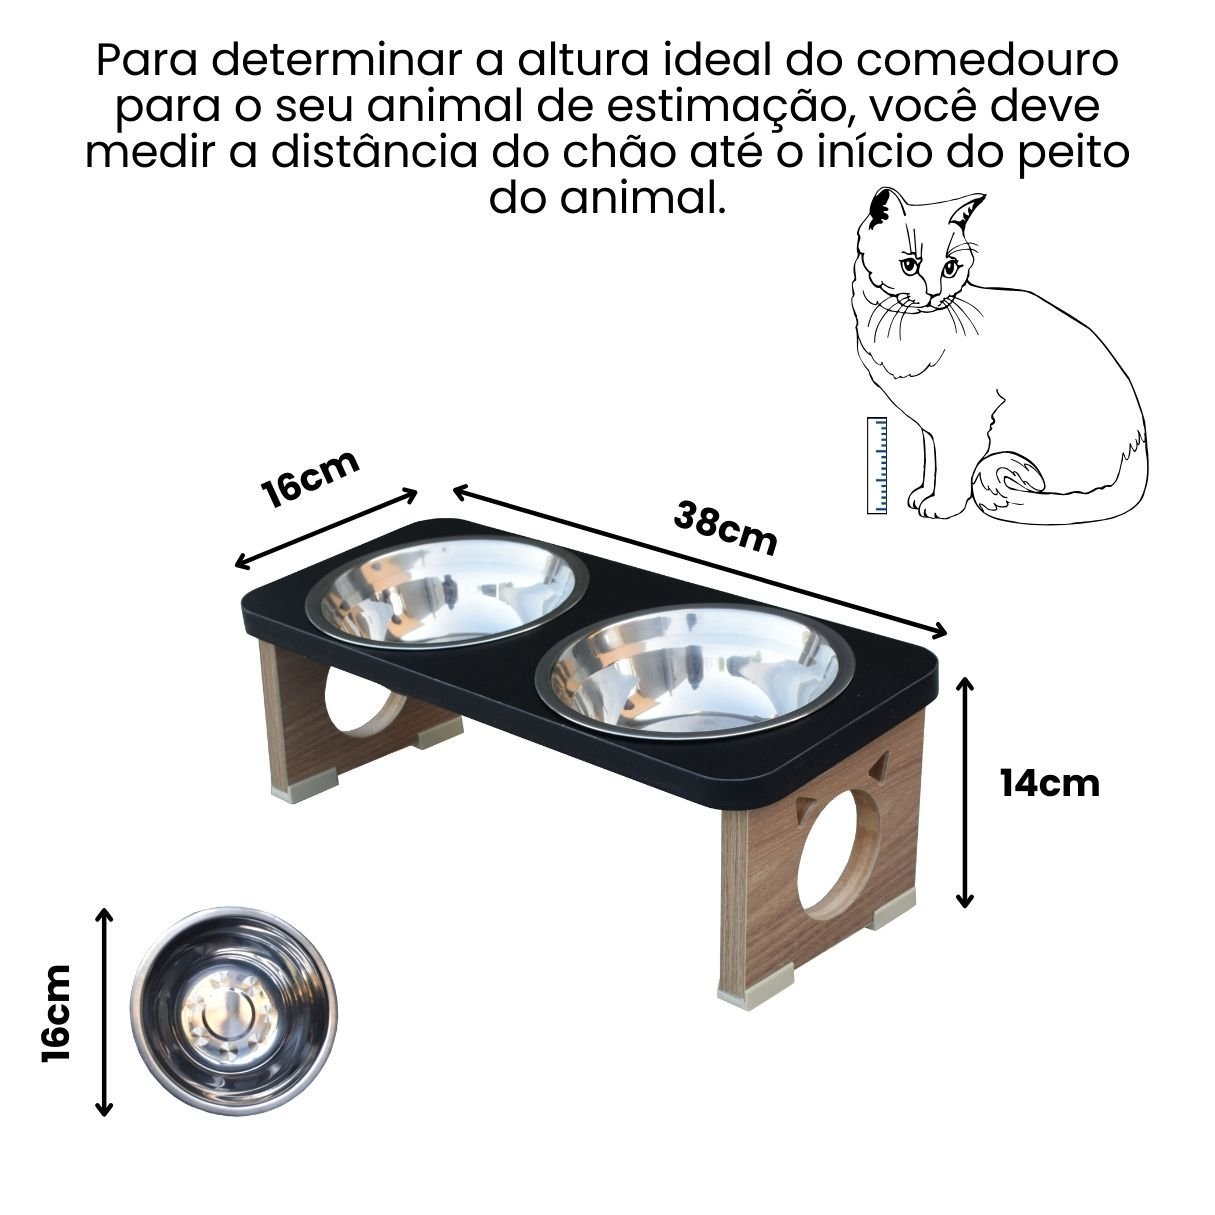 Comedouro Elevado Duplo Pet Gato Mdf Colors Preto - Inox - 3